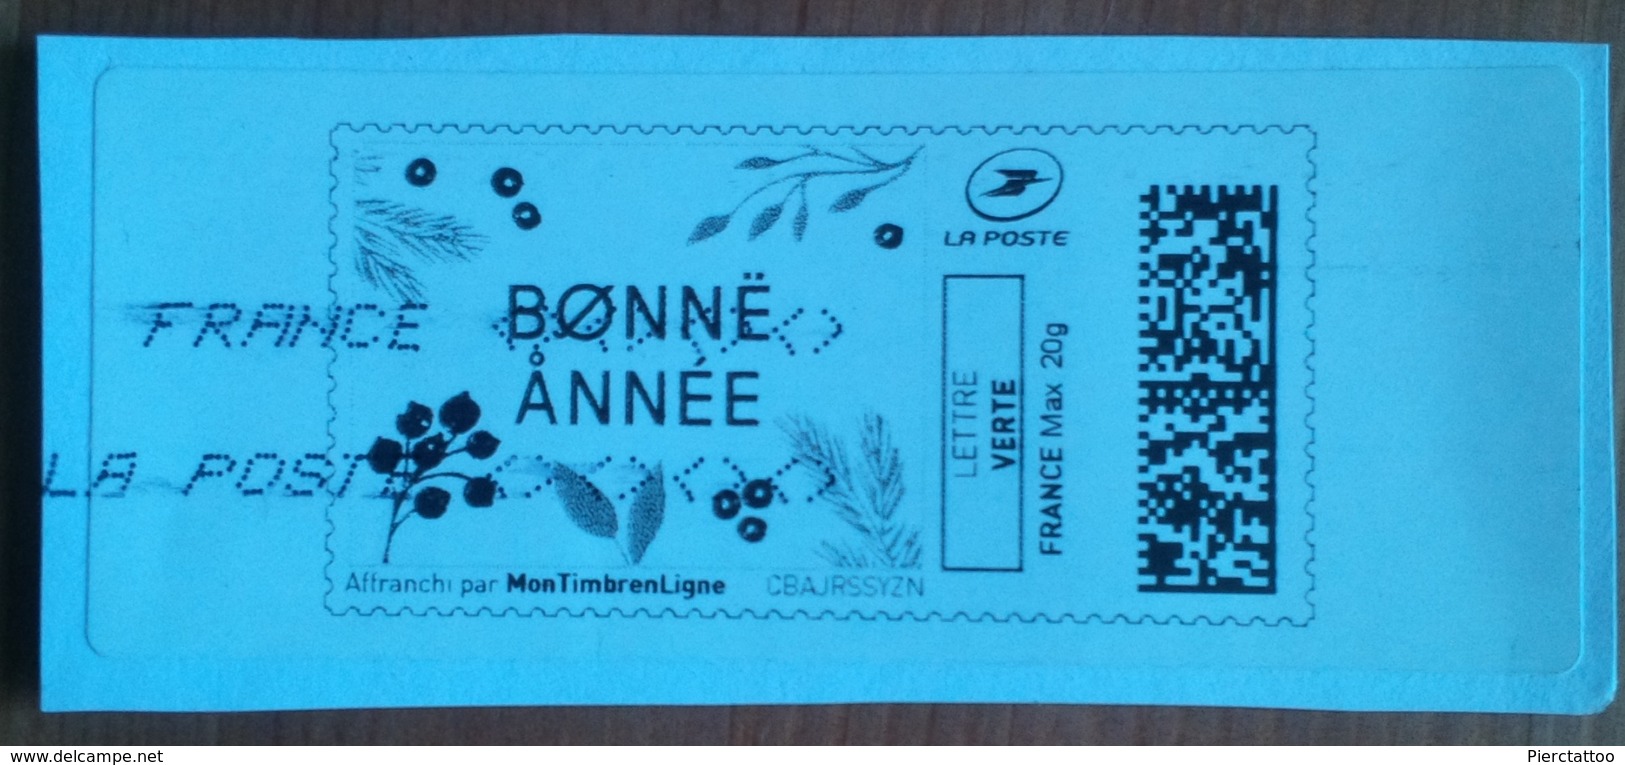 Timbre En Ligne "Bonne Année" (Lettre Verte) - France - Timbres à Imprimer (Montimbrenligne)